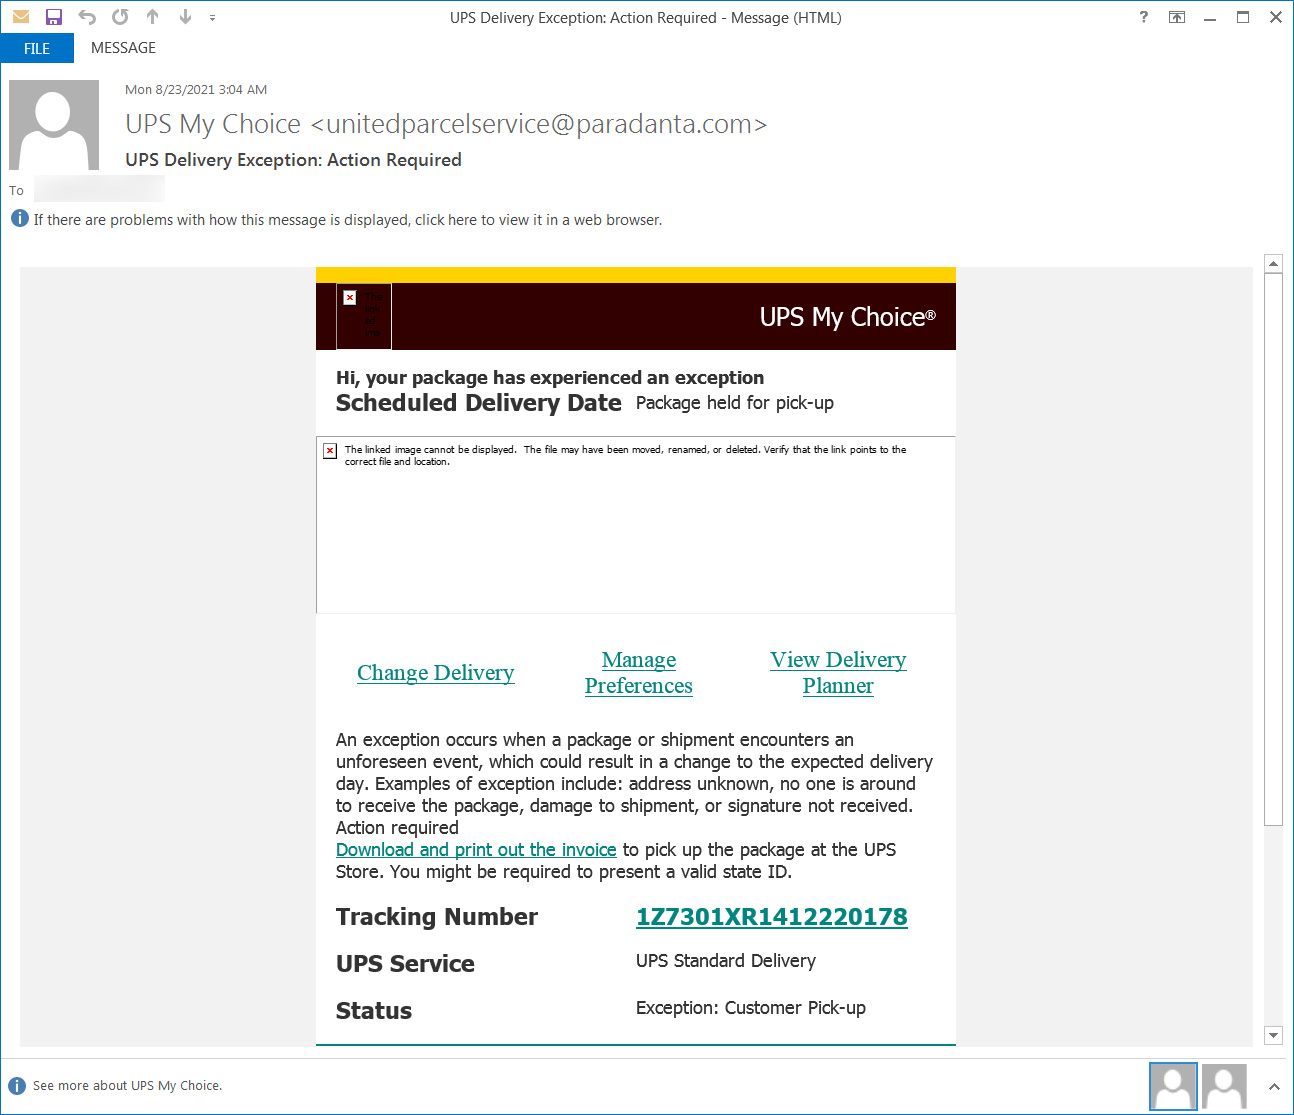 UPS phishing email